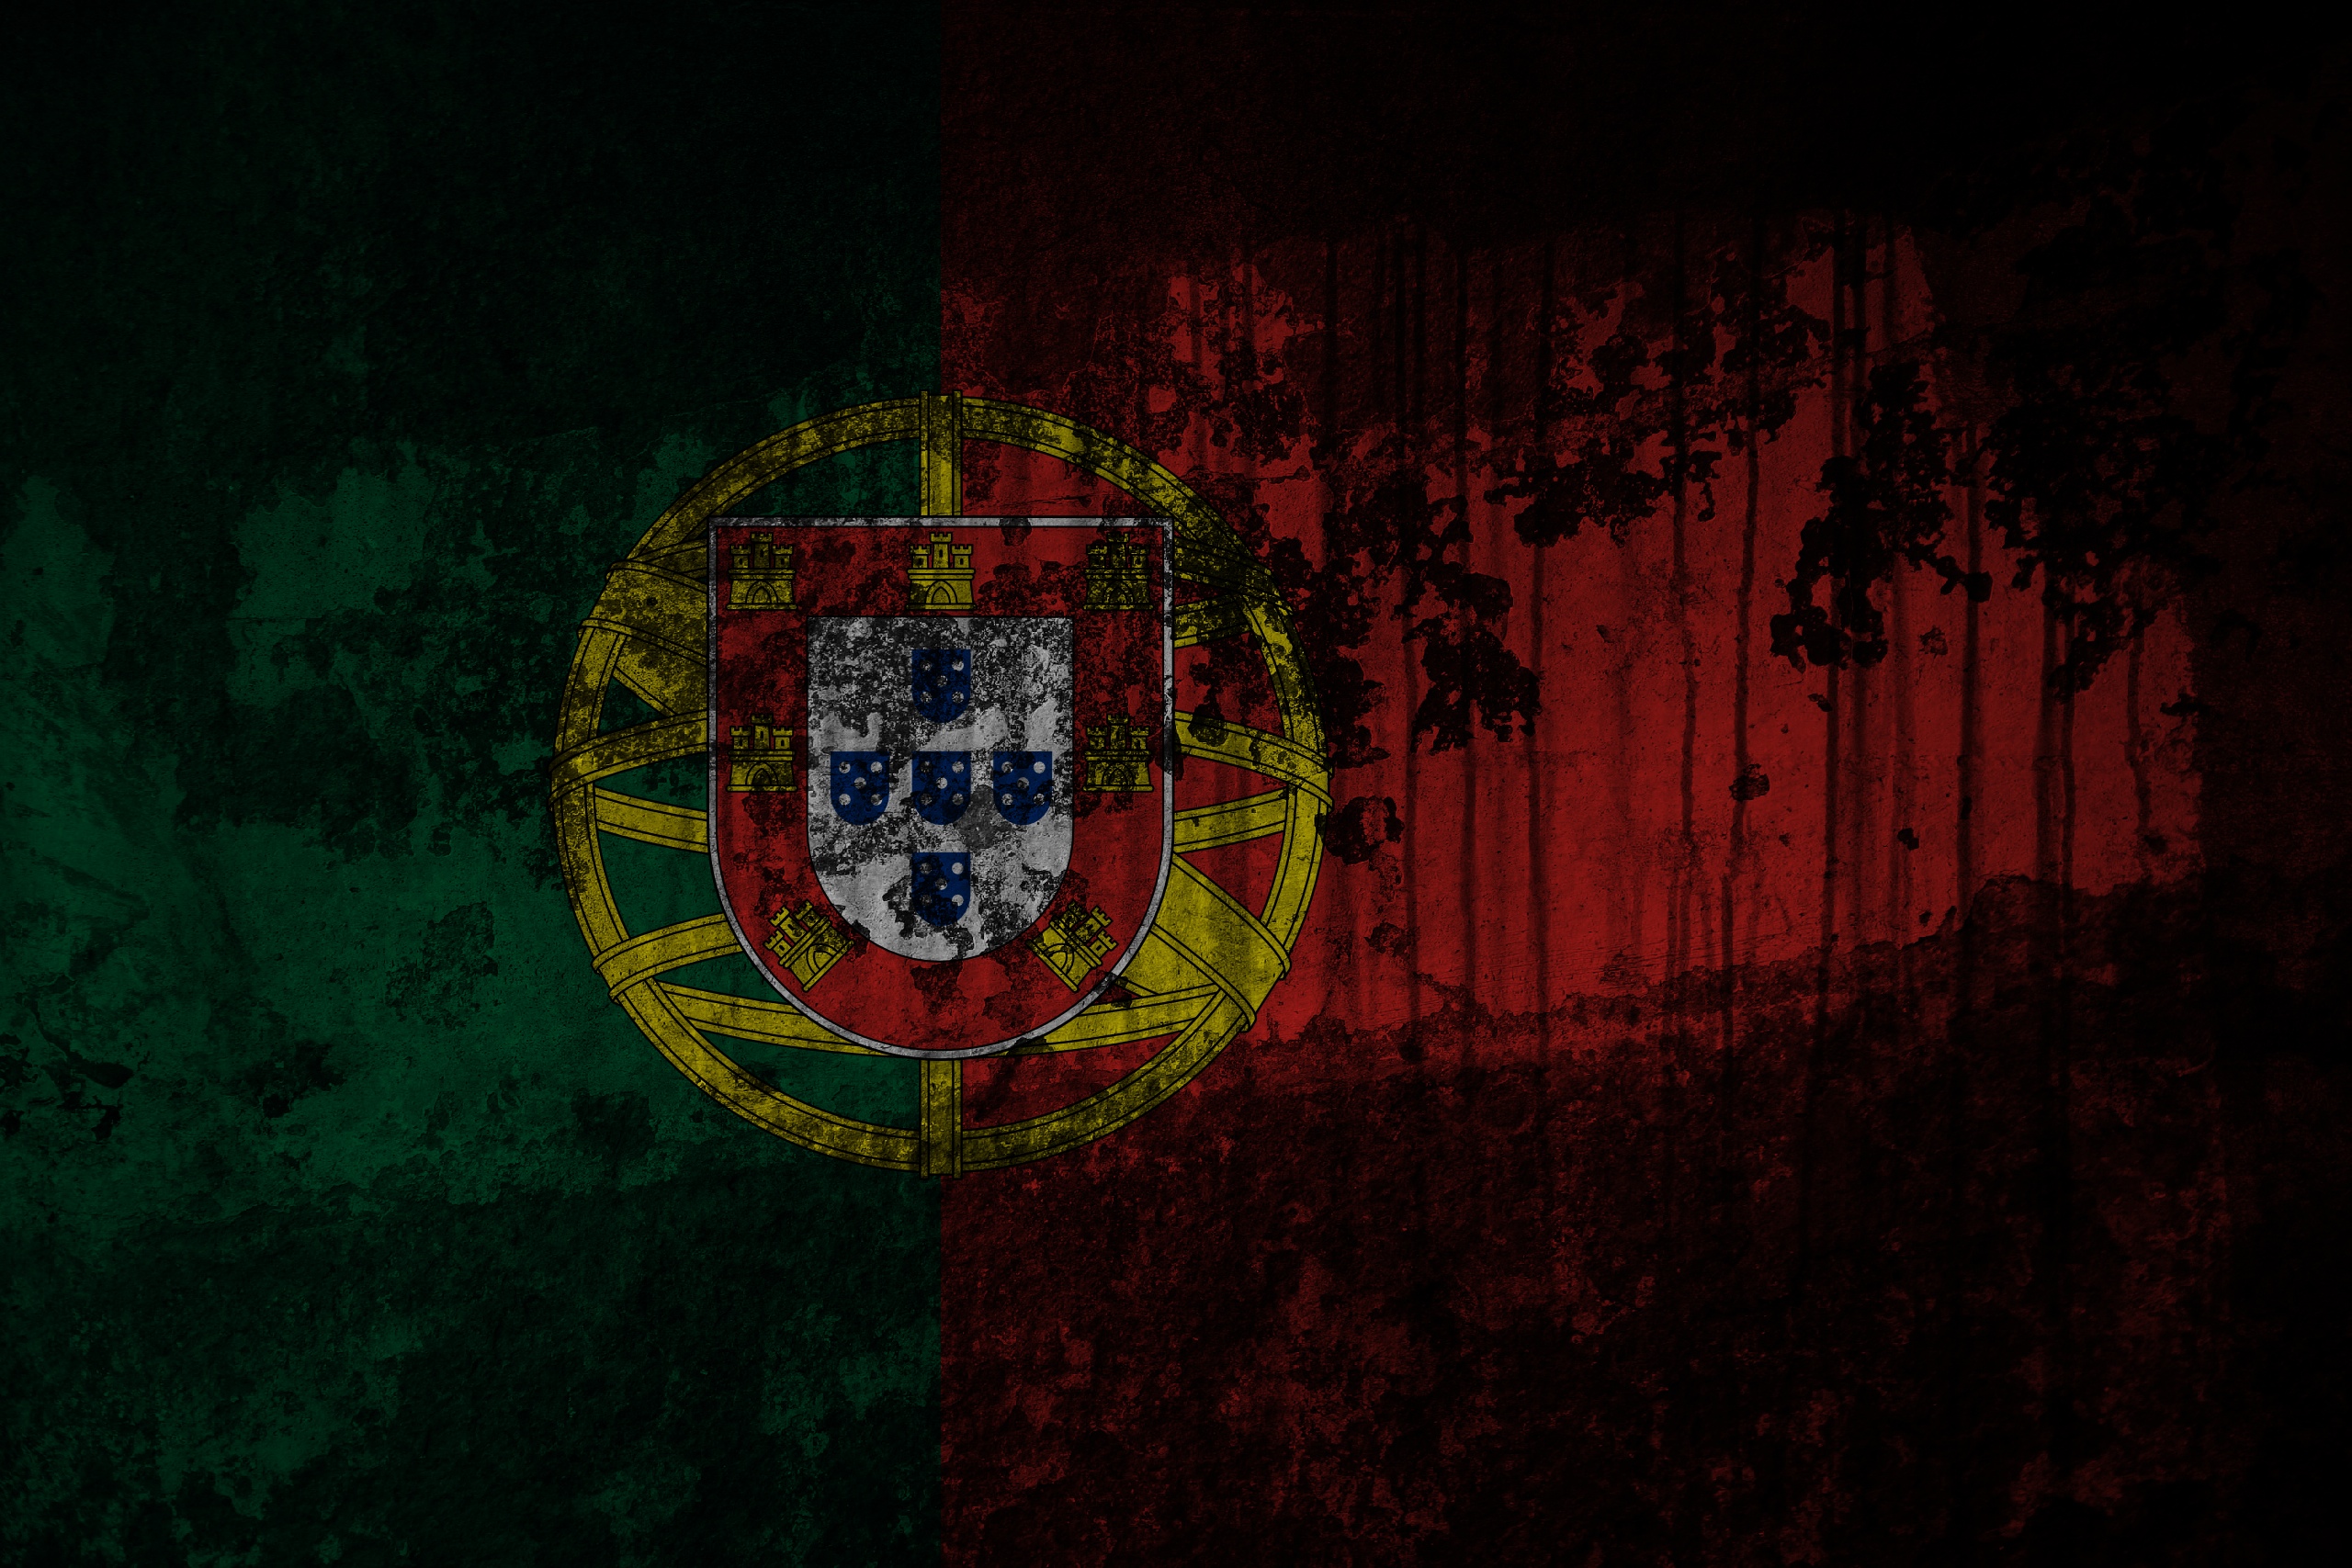 флаги, Португалия - обои на рабочий стол